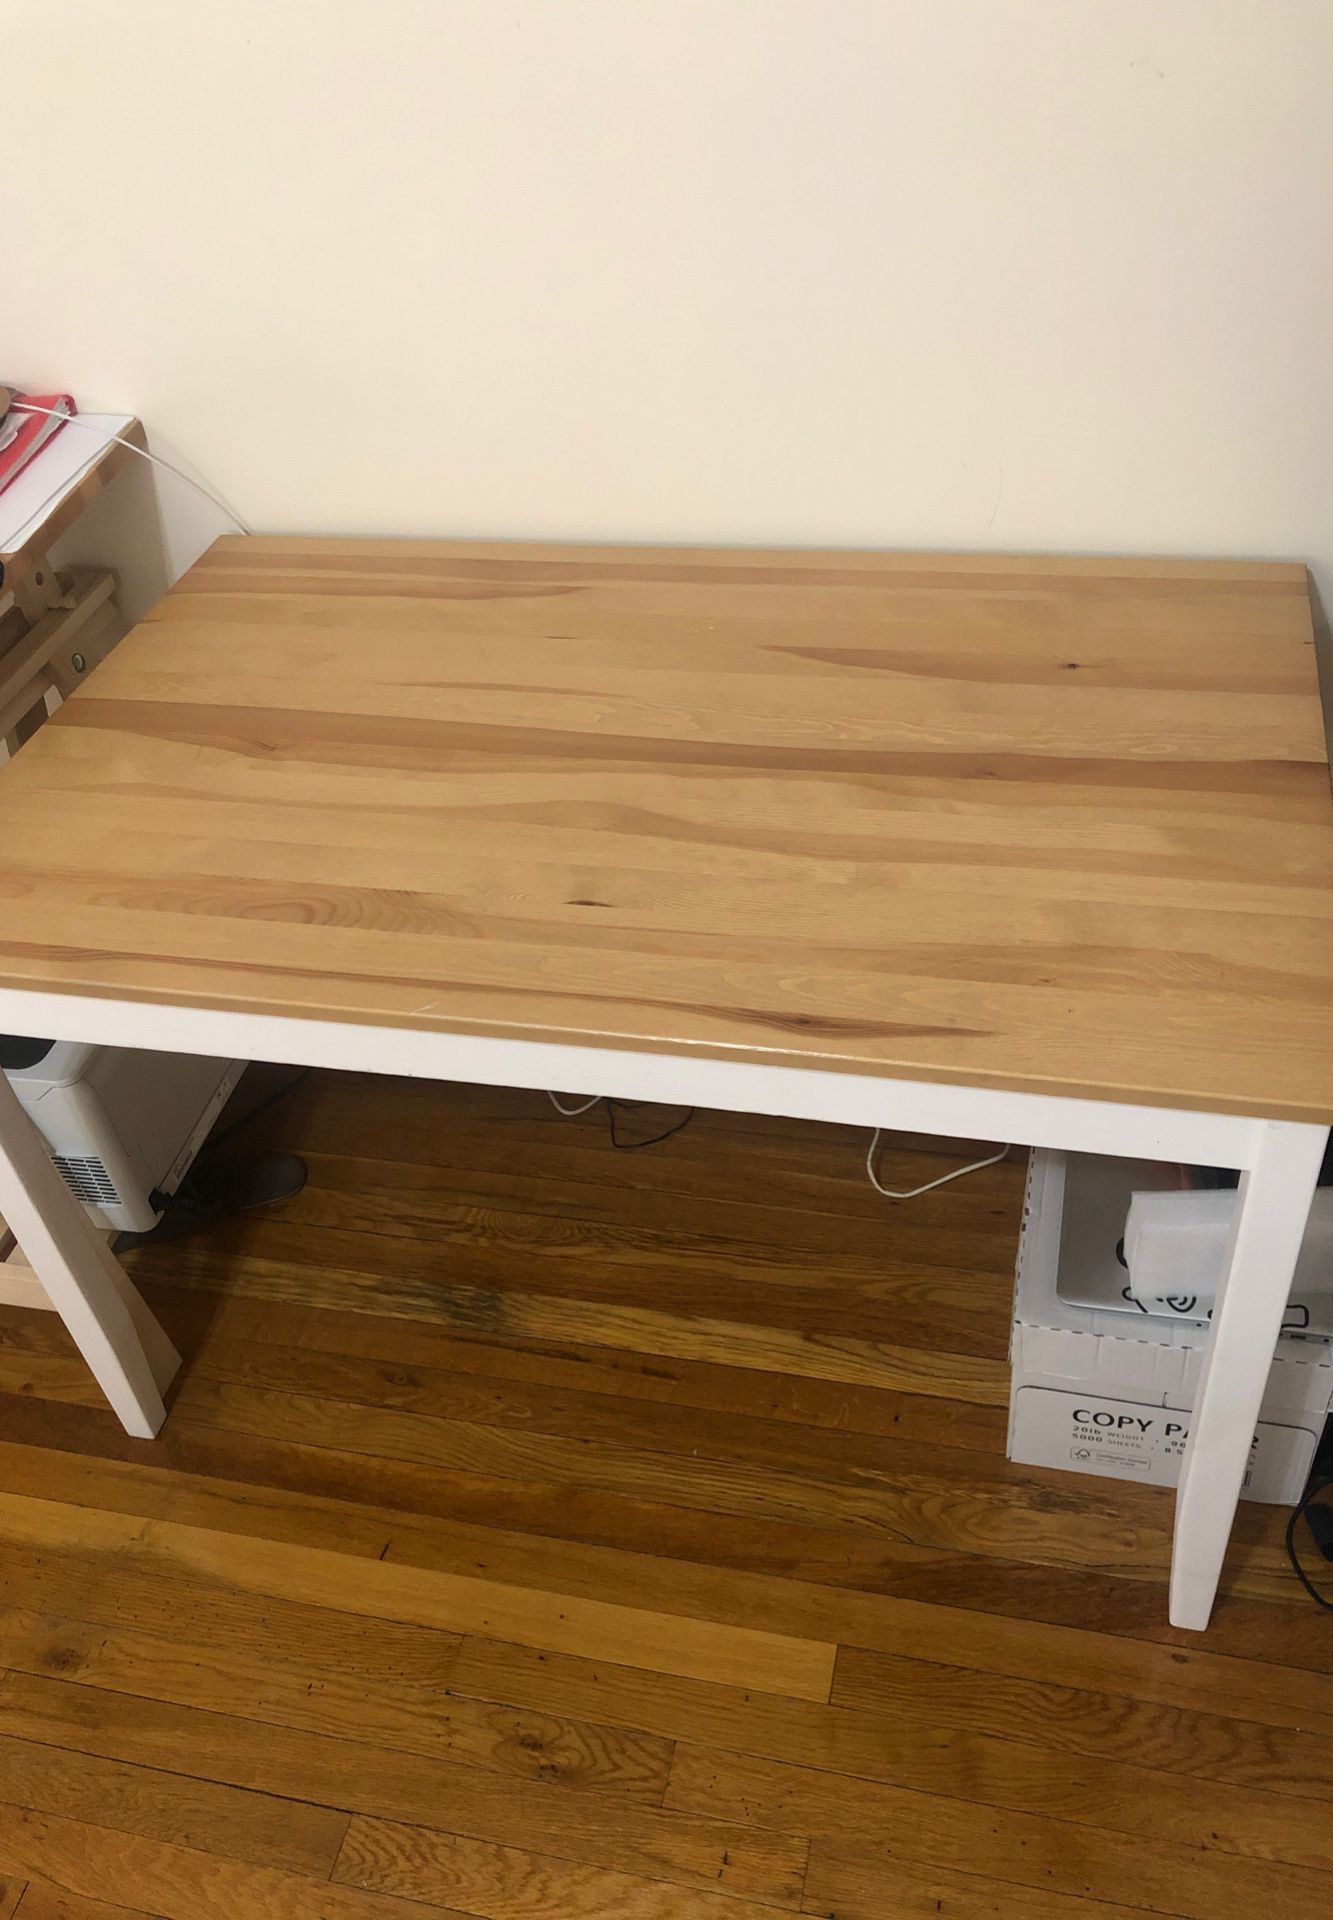 A simple desk.